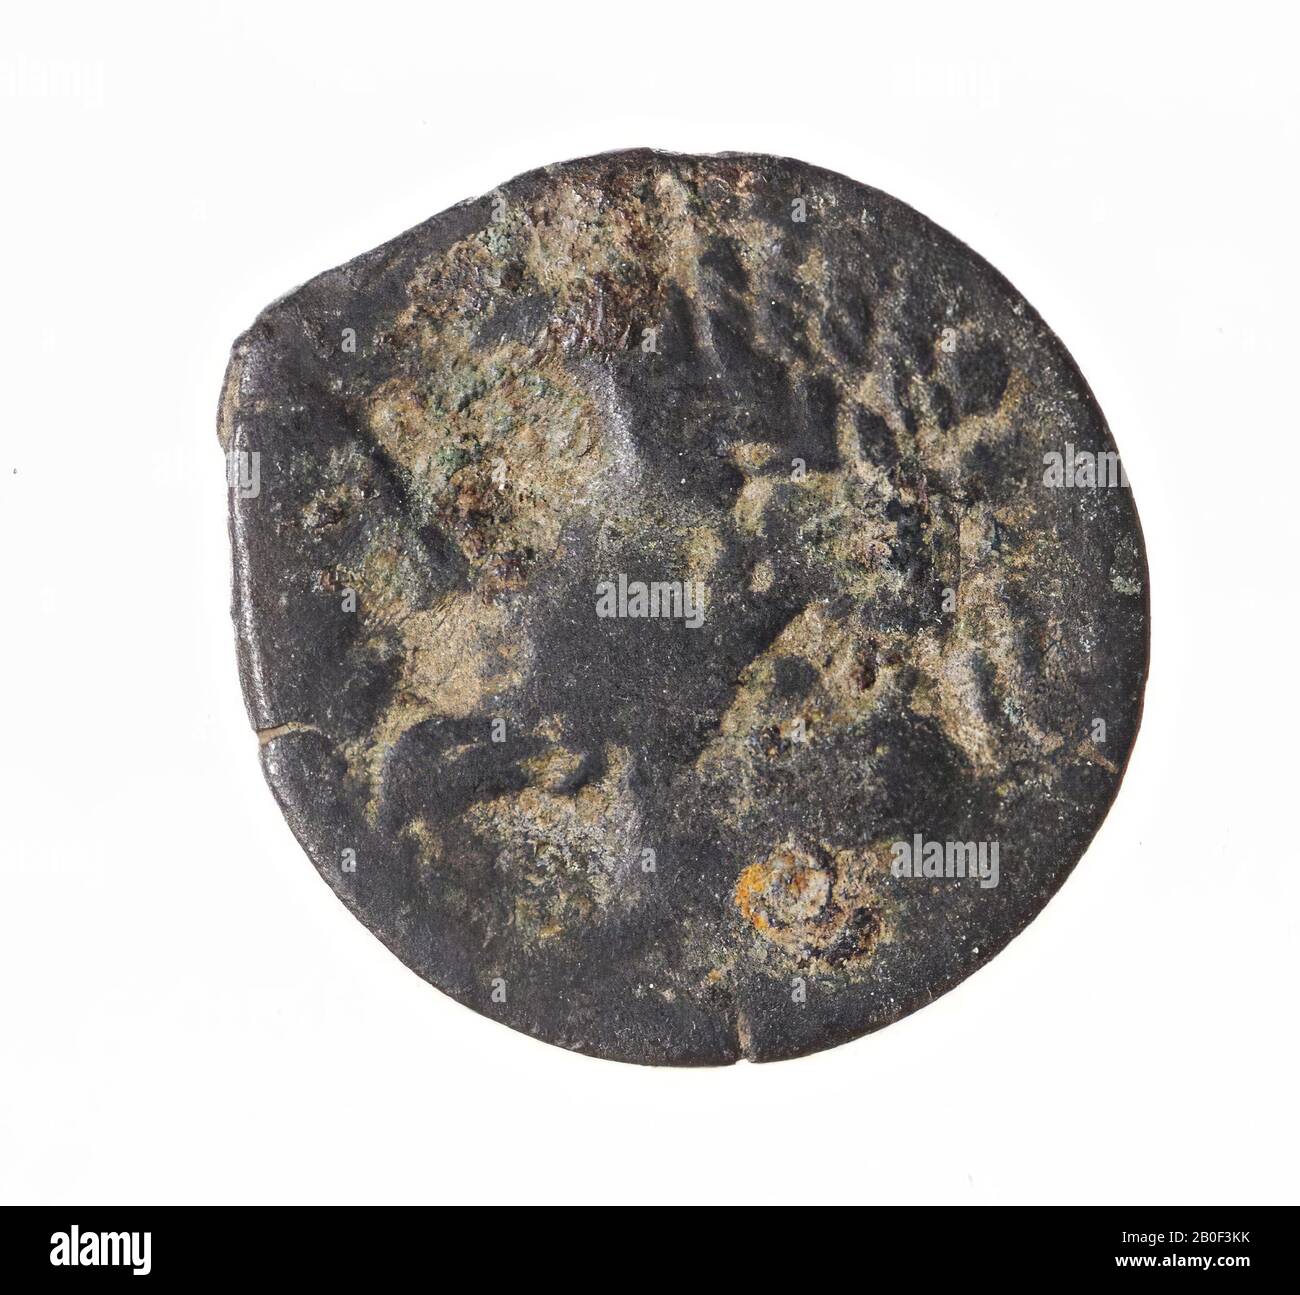 Classical antiquity, mint, AES-26, Massinissa et al., Numidia-Mauretania, metal, copper, Diam., 26 mm, wt., 12.97 gr, roman BC 208-108, Italy Stock Photo